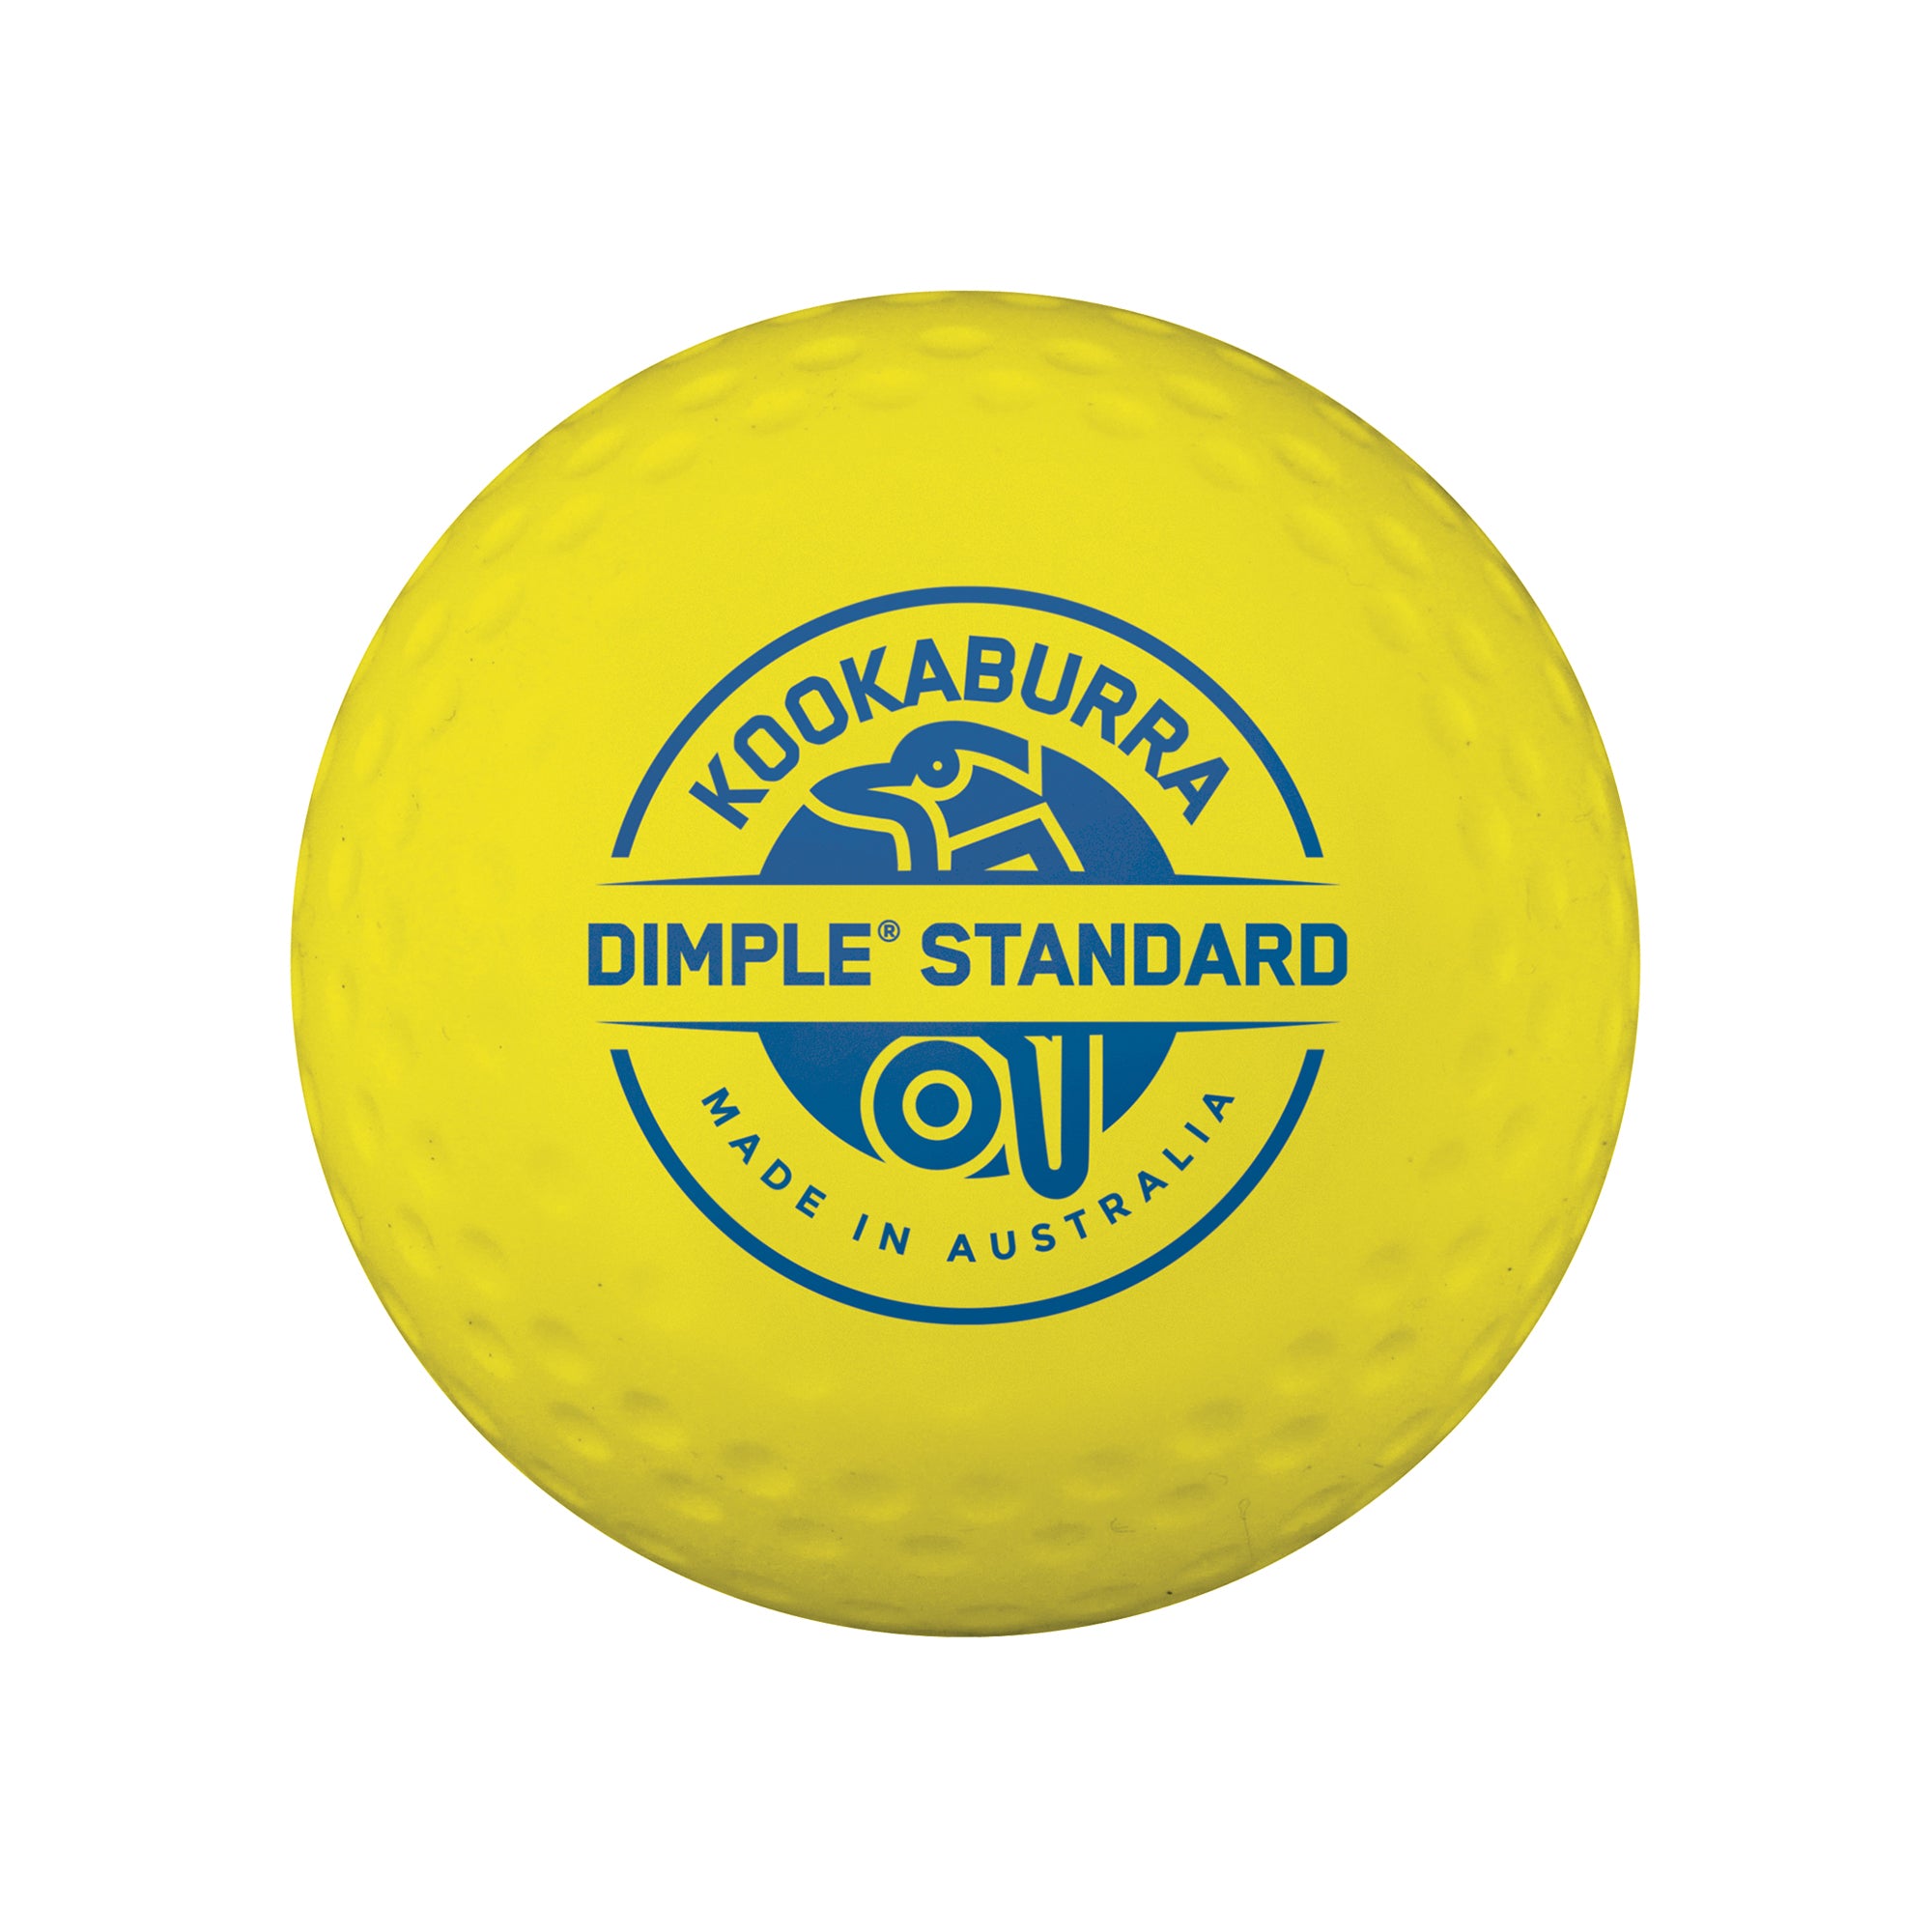 Kookaburra Dimple Standard Hockey Ball - Yellow